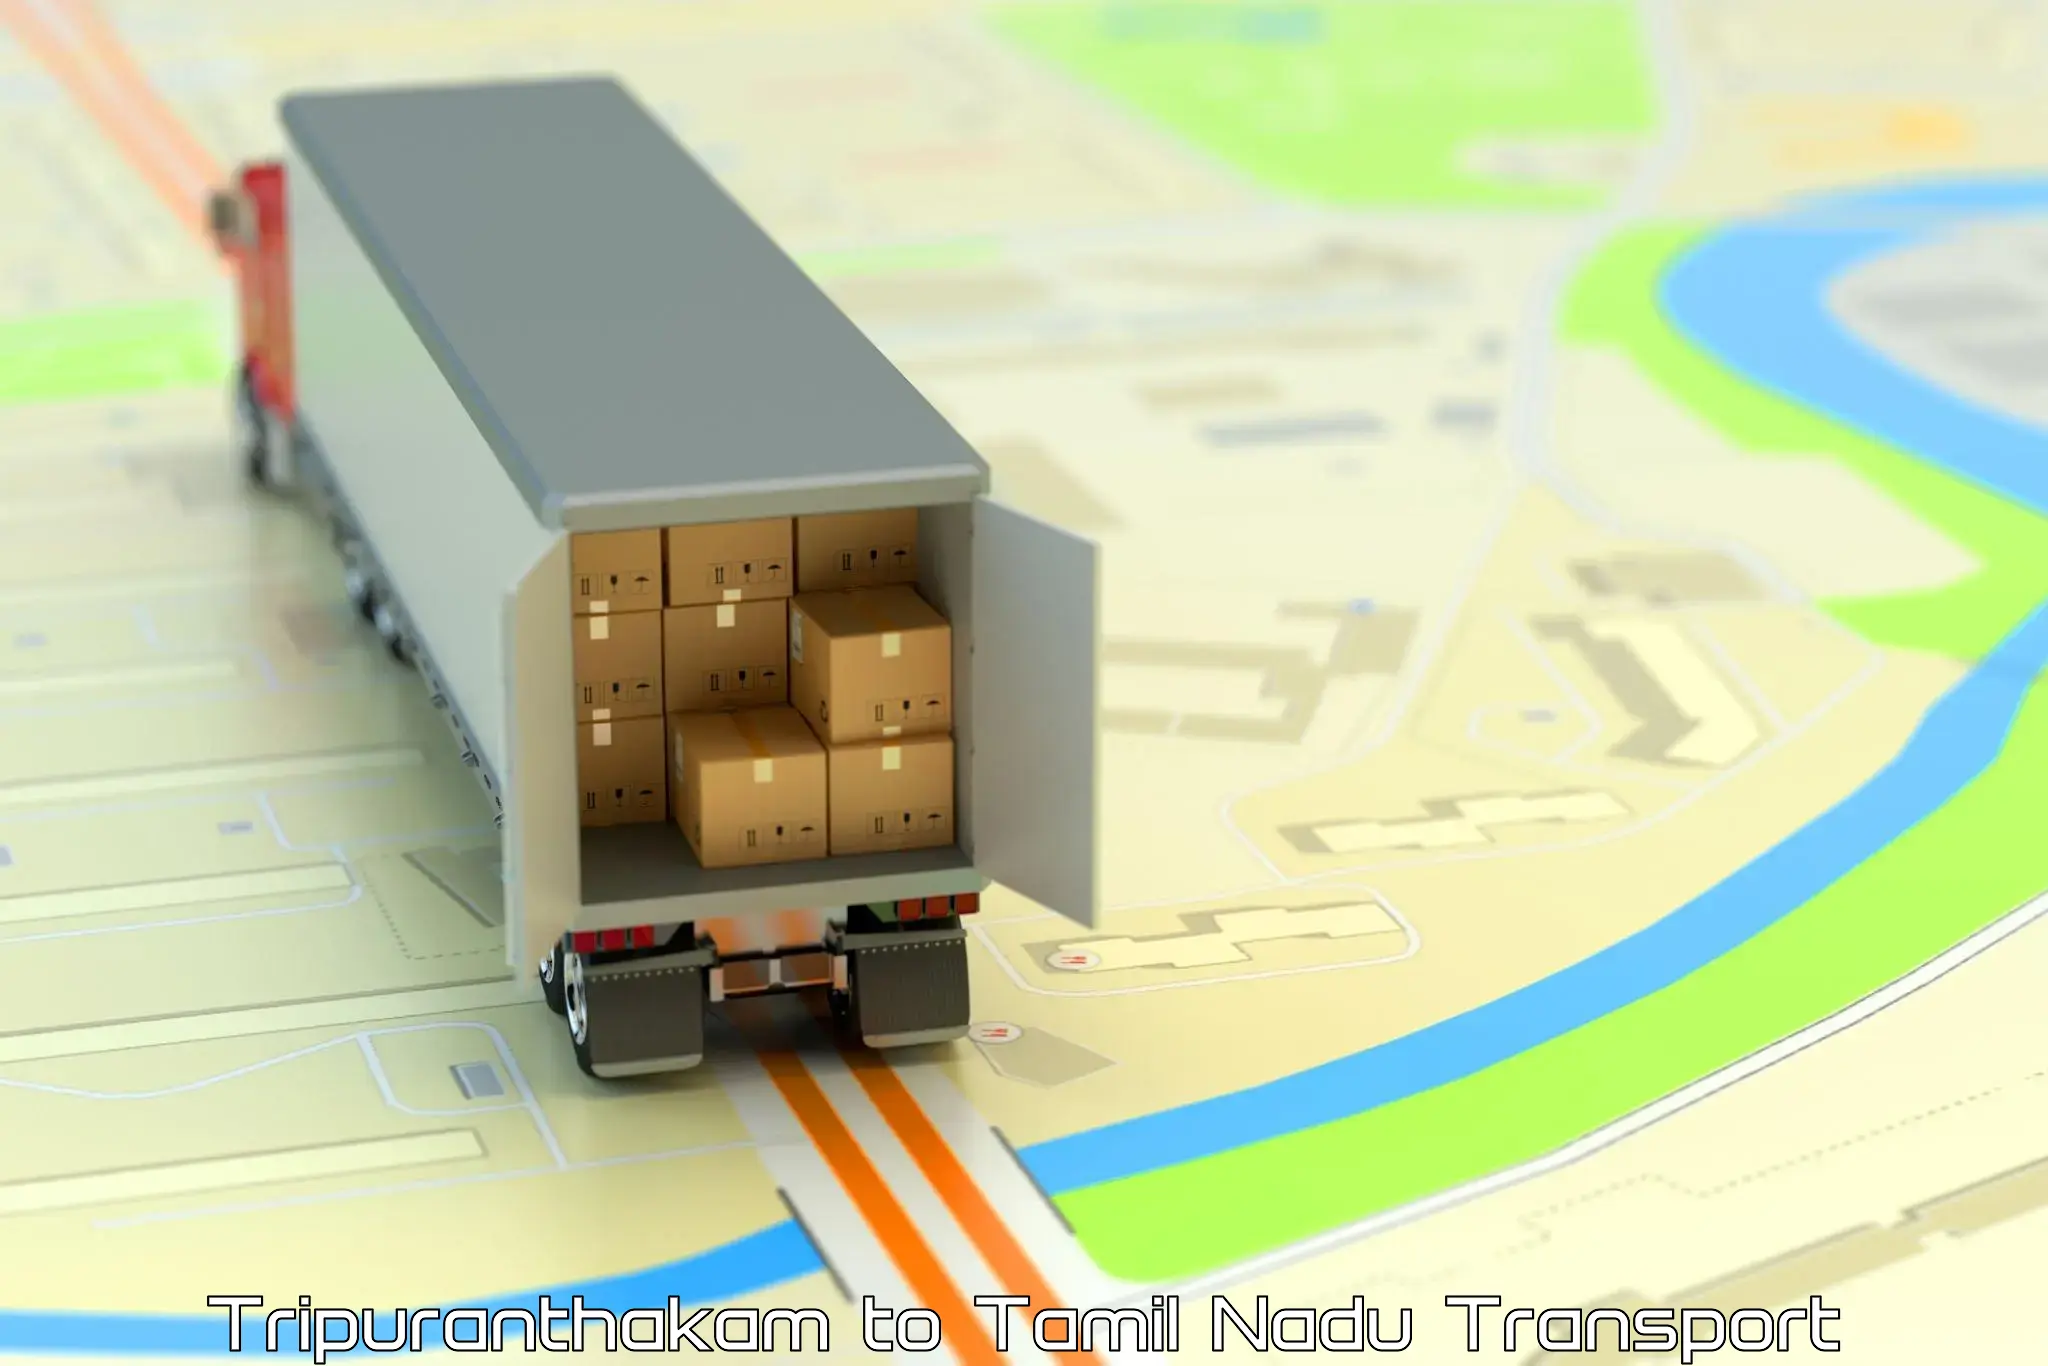 Nearest transport service in Tripuranthakam to Maharajapuram